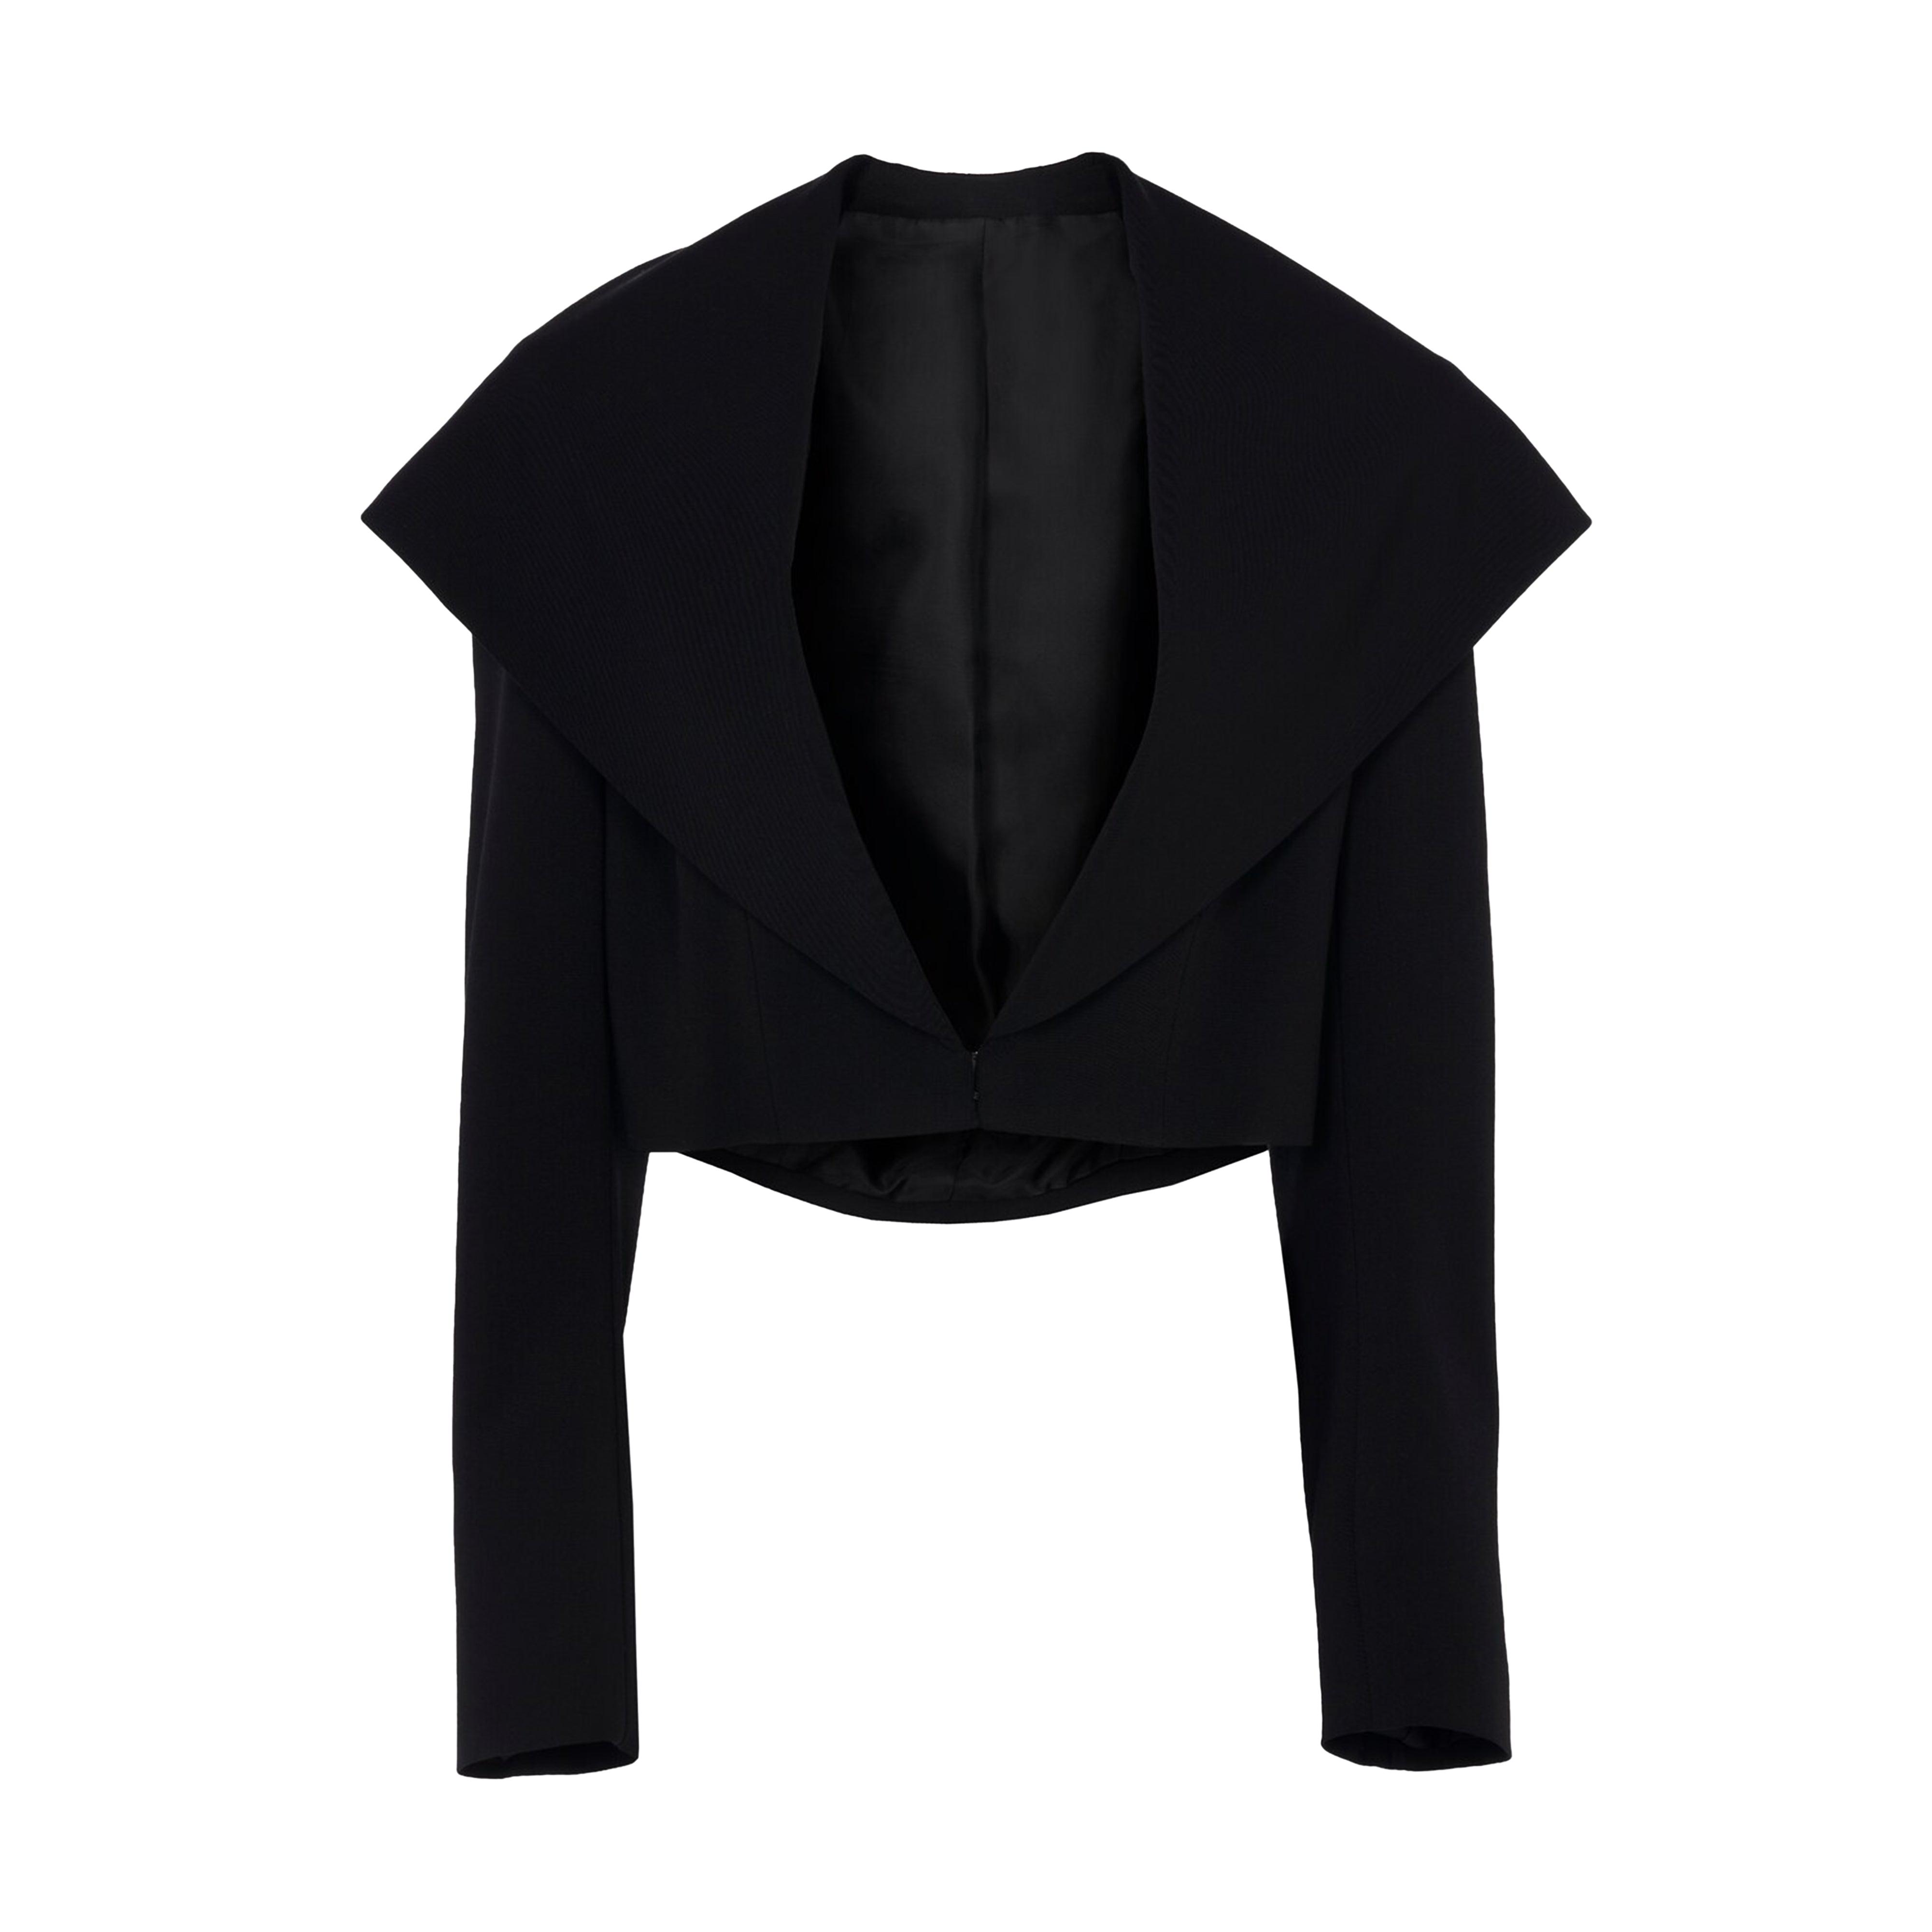 AlaÏa Bi-Stretch Hooded Jacket (Black) by AZZEDINE ALAIA